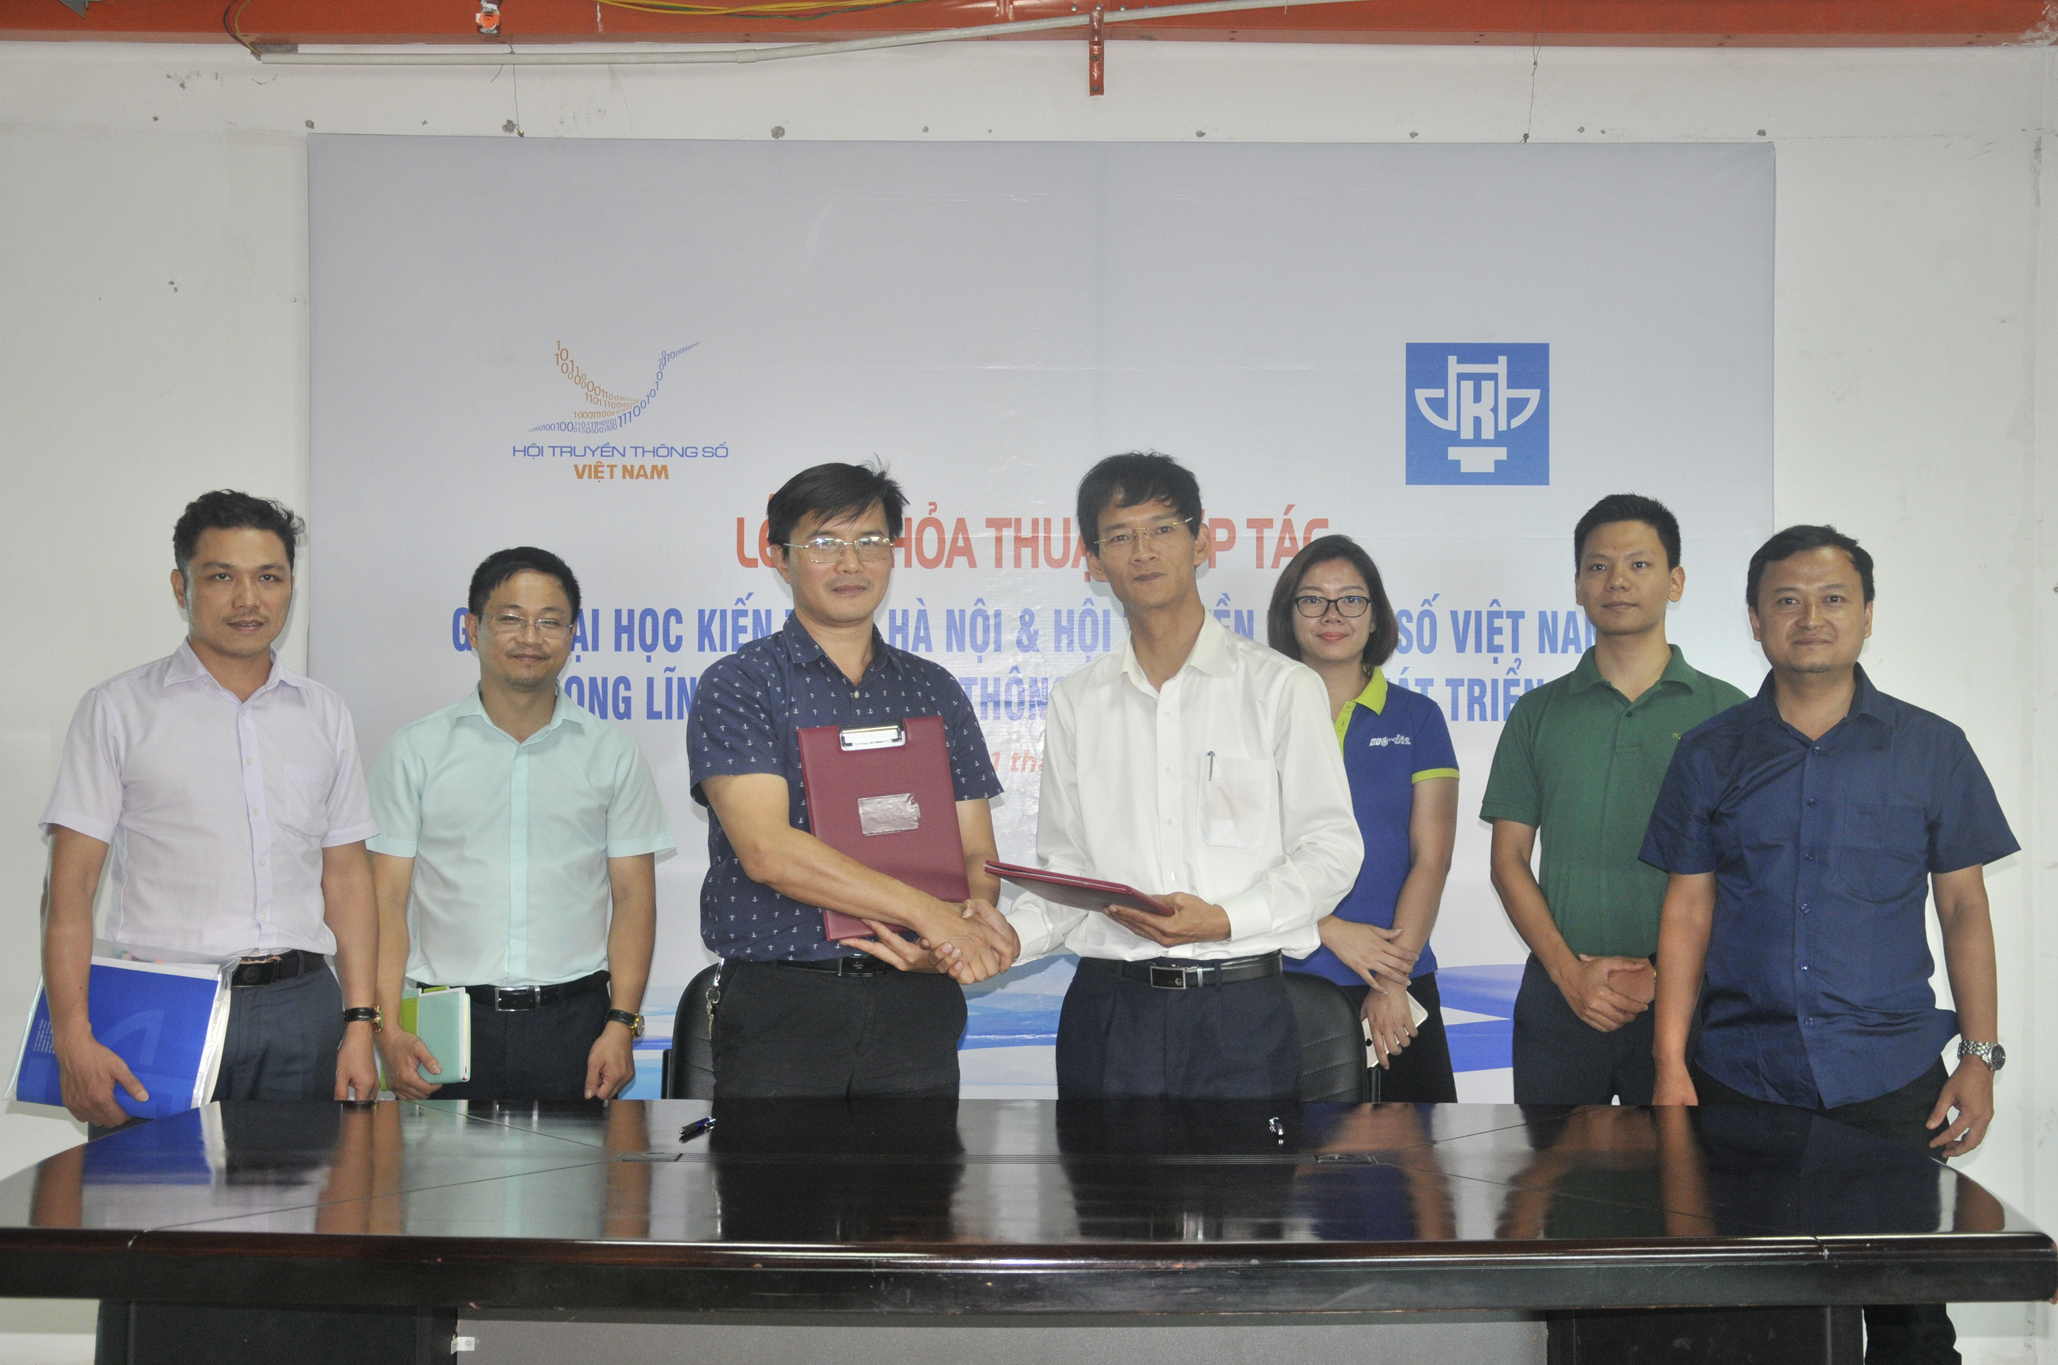 Ký kết Biên bản thỏa thuận hợp tác giữa Trường Đại học Kiến trúc Hà Nội  và Hội Truyền thông số Việt Nam trong lĩnh vực truyền thông  và nghiên cứu phát triển